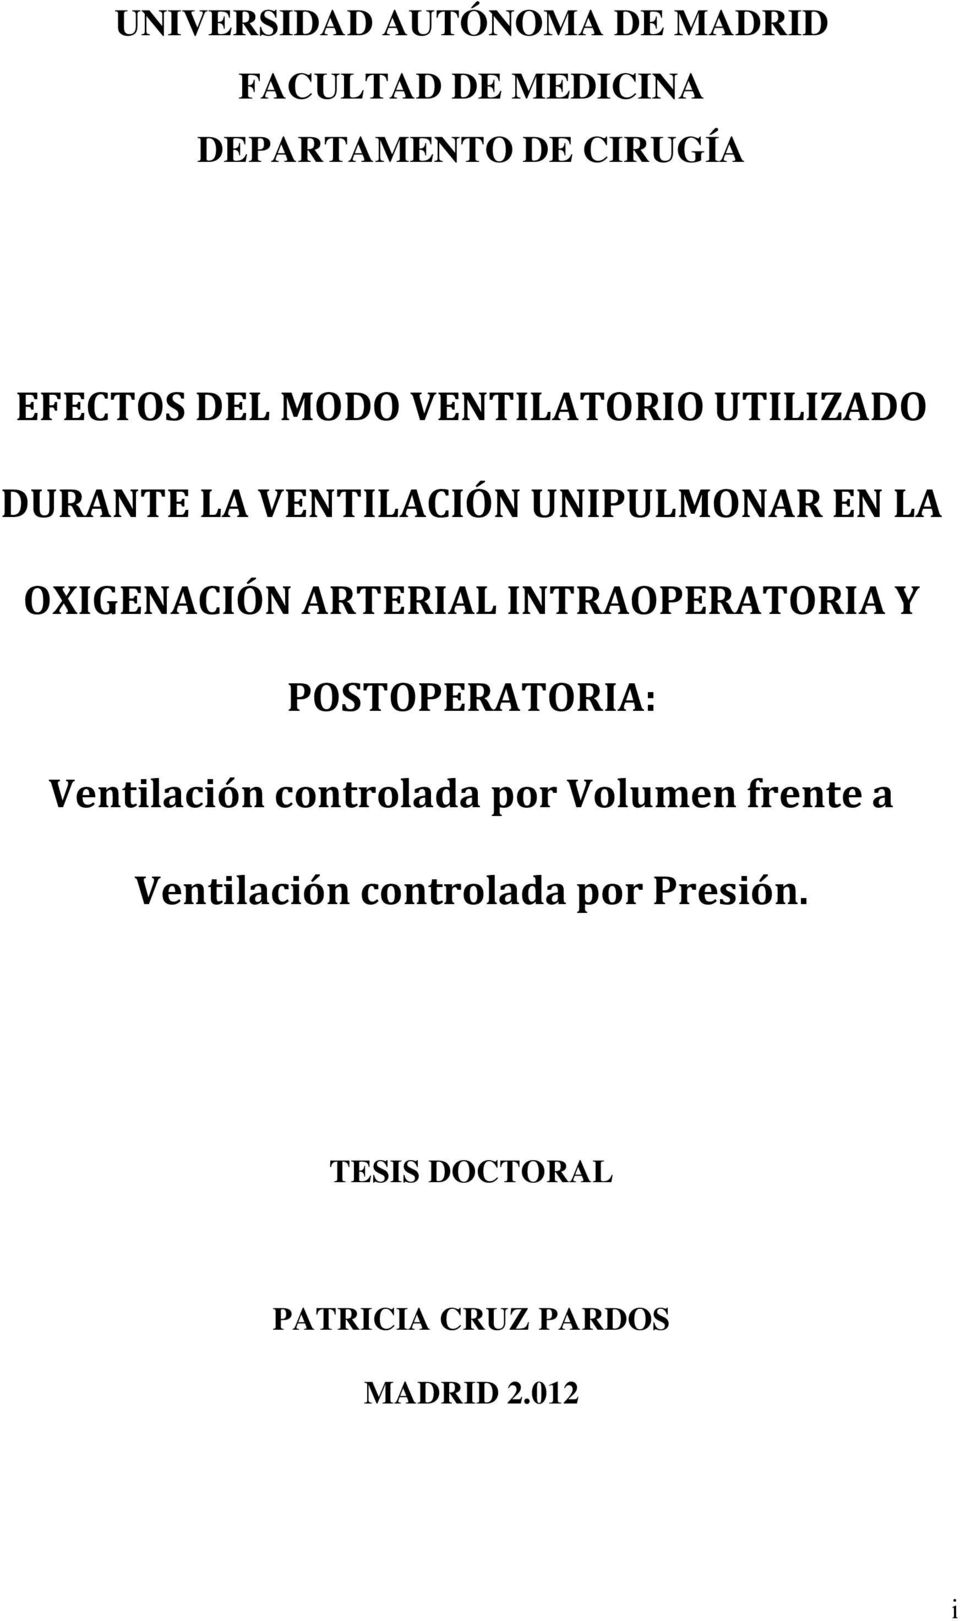 ARTERIAL INTRAOPERATORIA Y POSTOPERATORIA: Ventilación controlada por Volumen frente